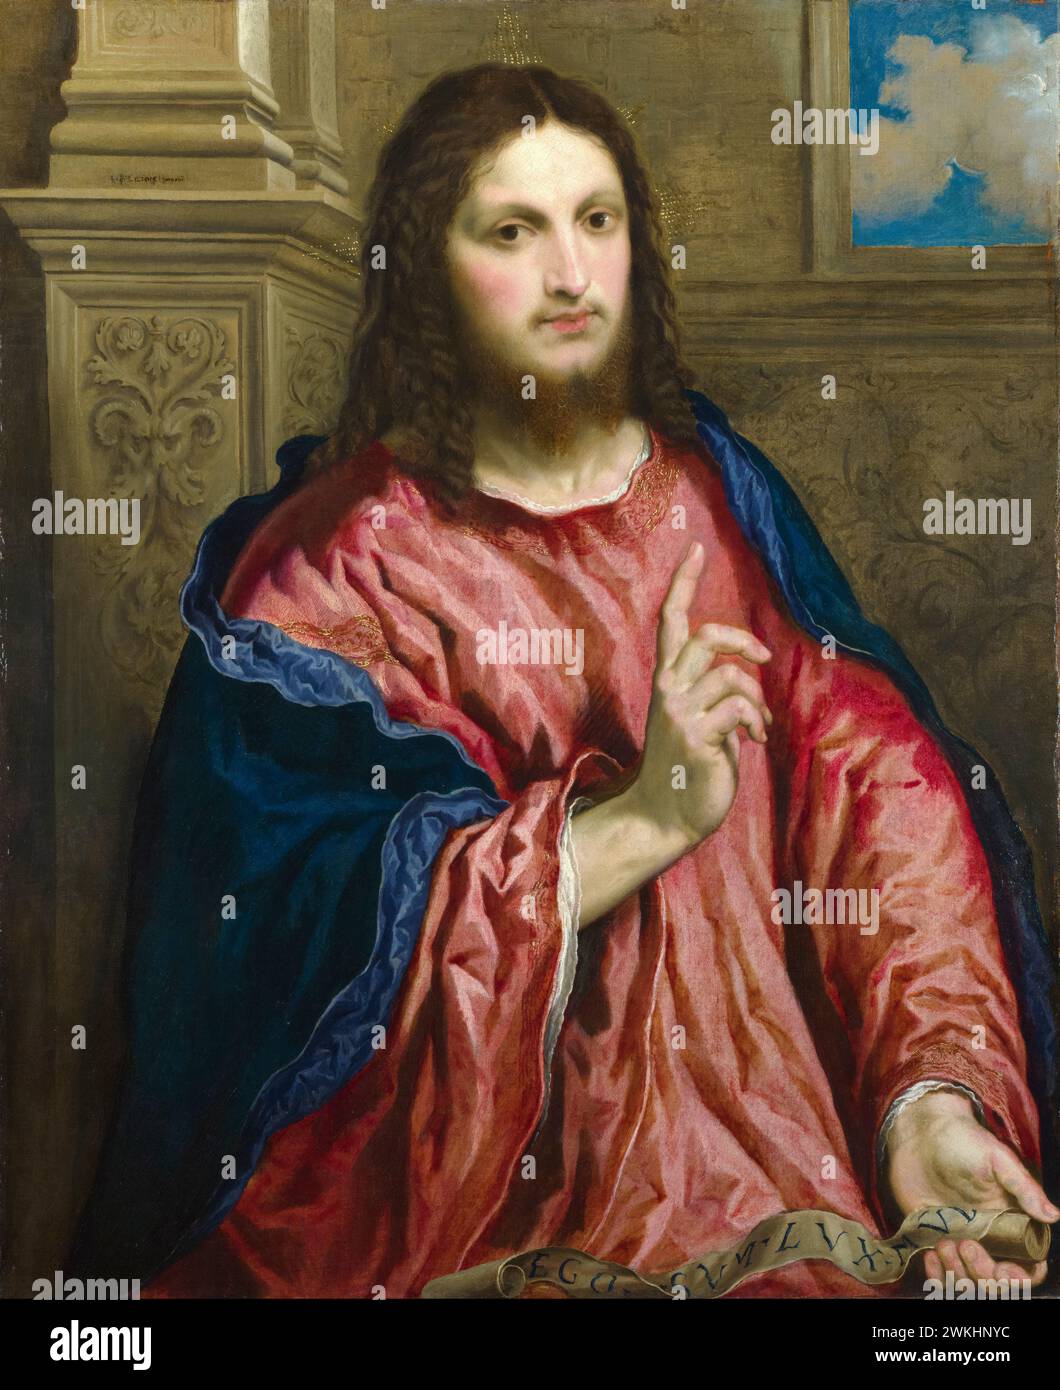 Paris Bordone, Christ comme « la lumière du monde », portrait peint à l’huile sur toile, vers 1550 Banque D'Images